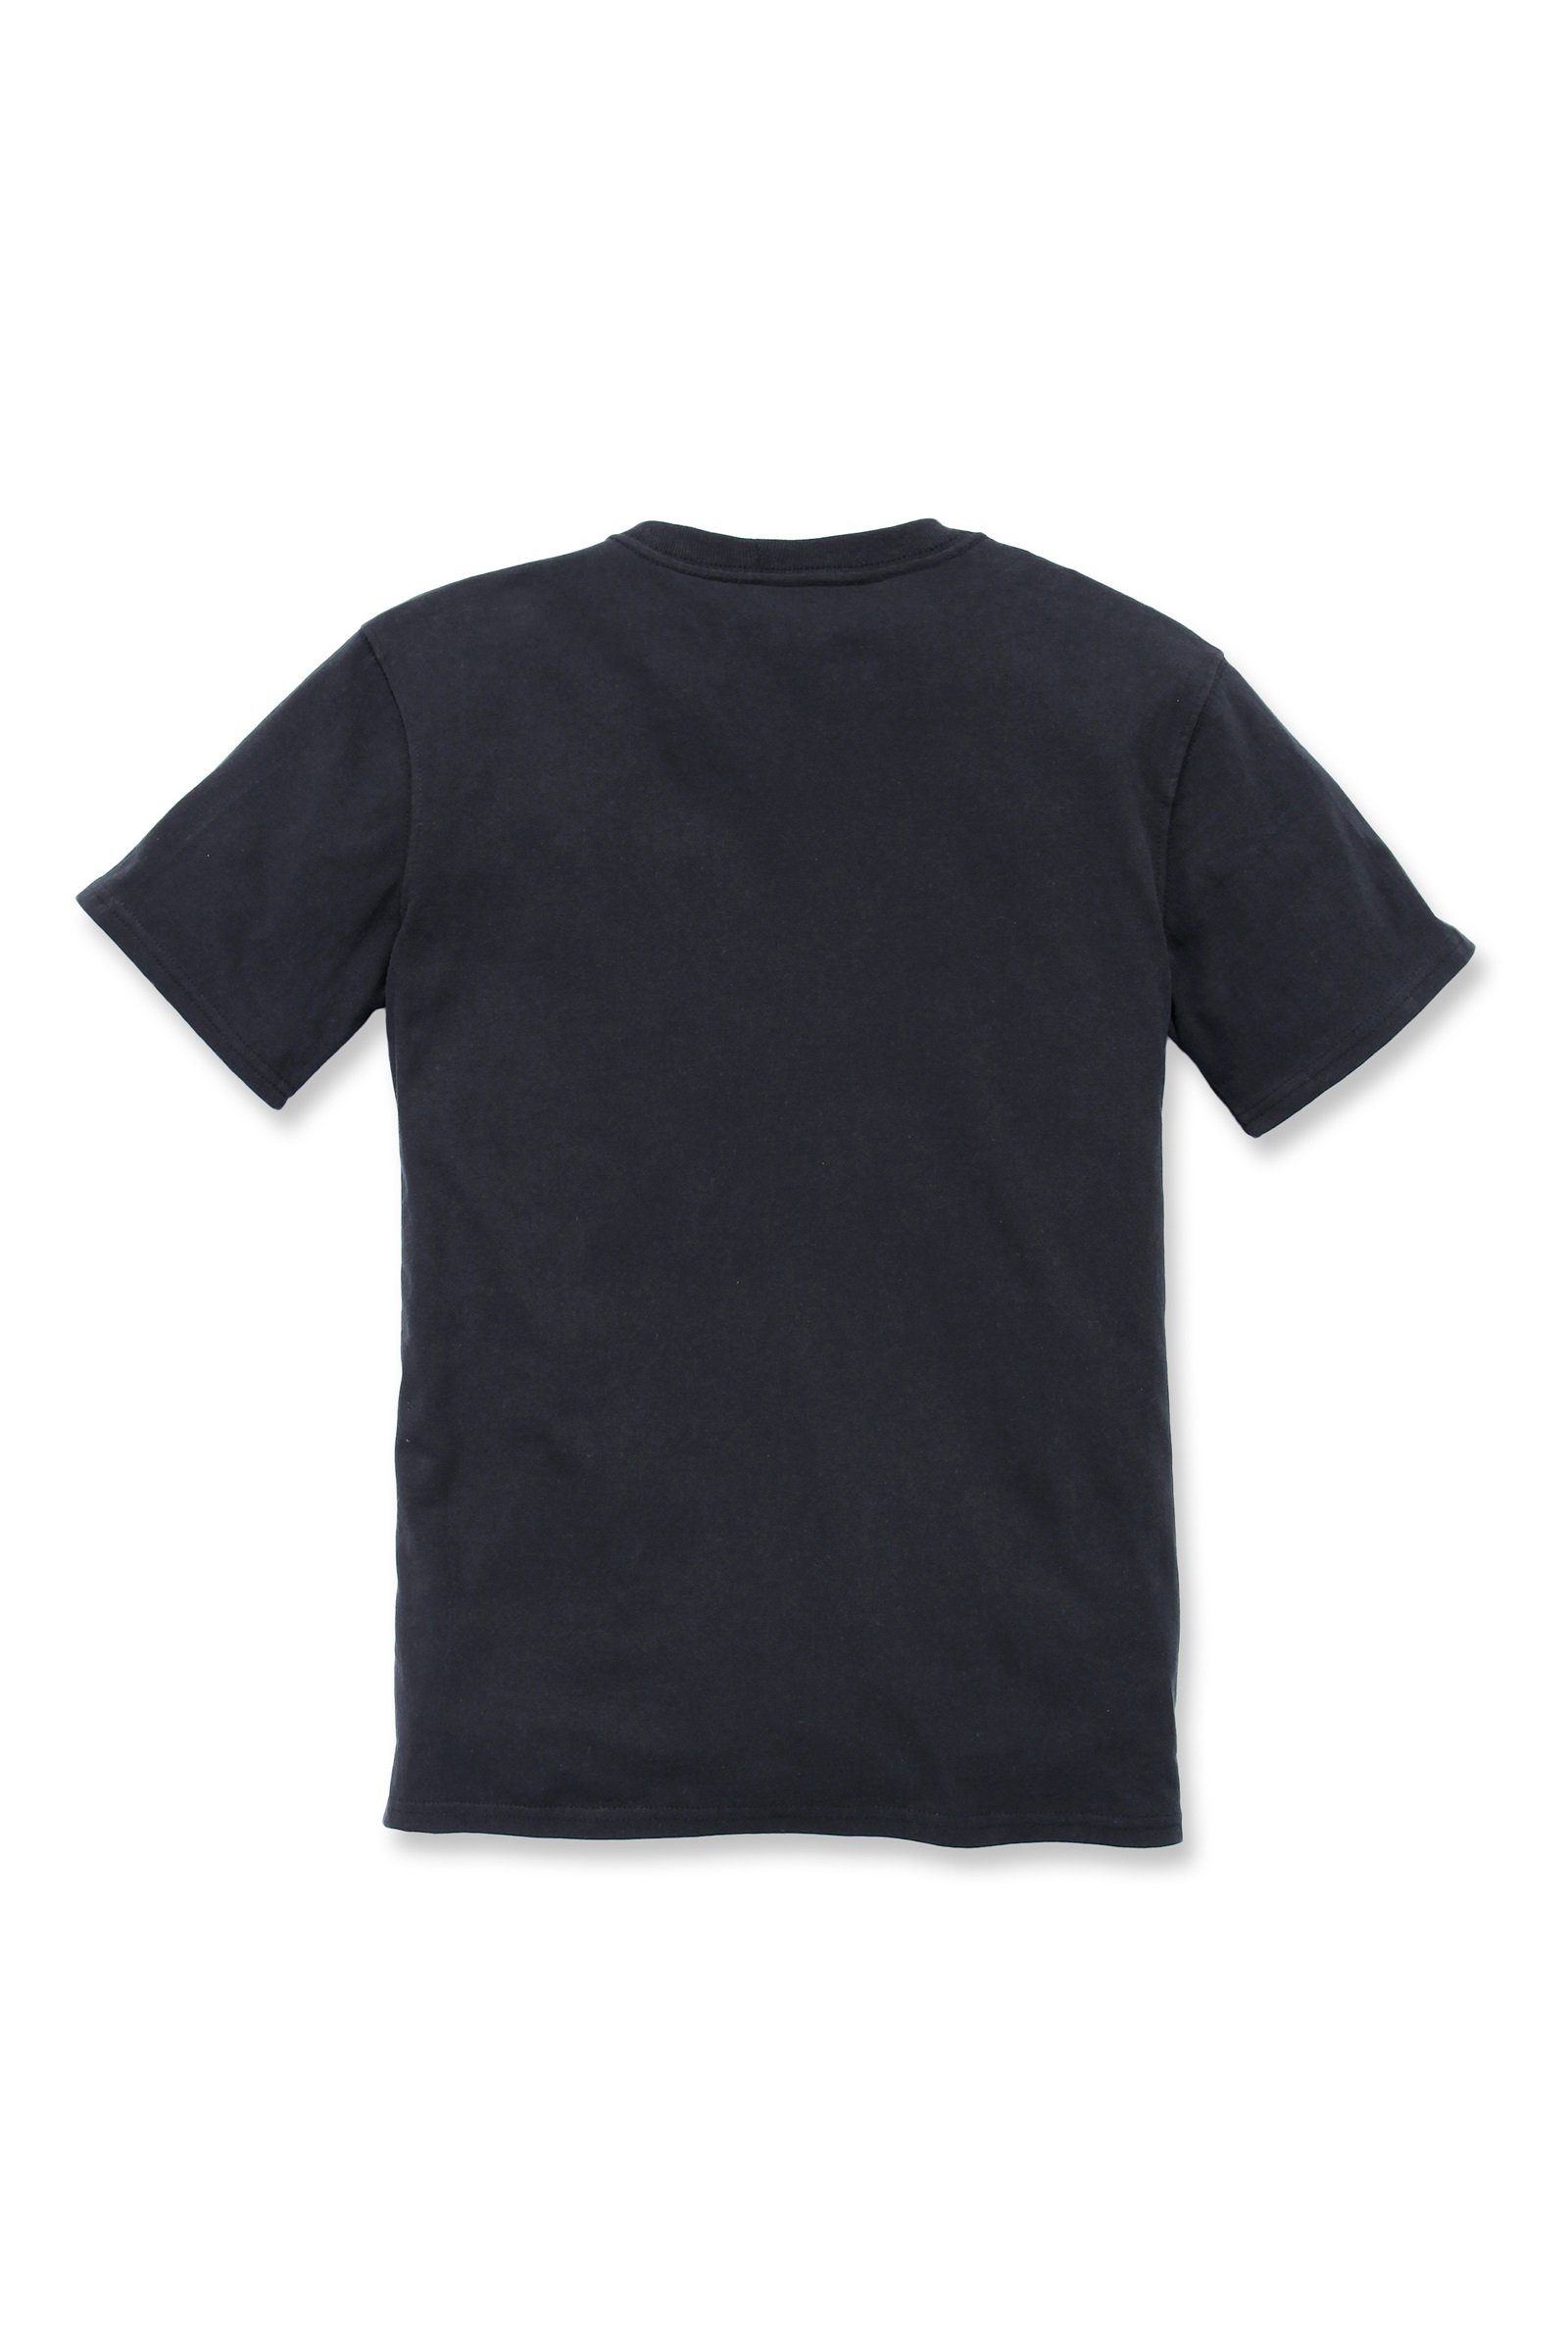 Carhartt Damen Carhartt Loose black Fit Short-Sleeve Adult Heavyweight Pocket T-Shirt T-Shirt